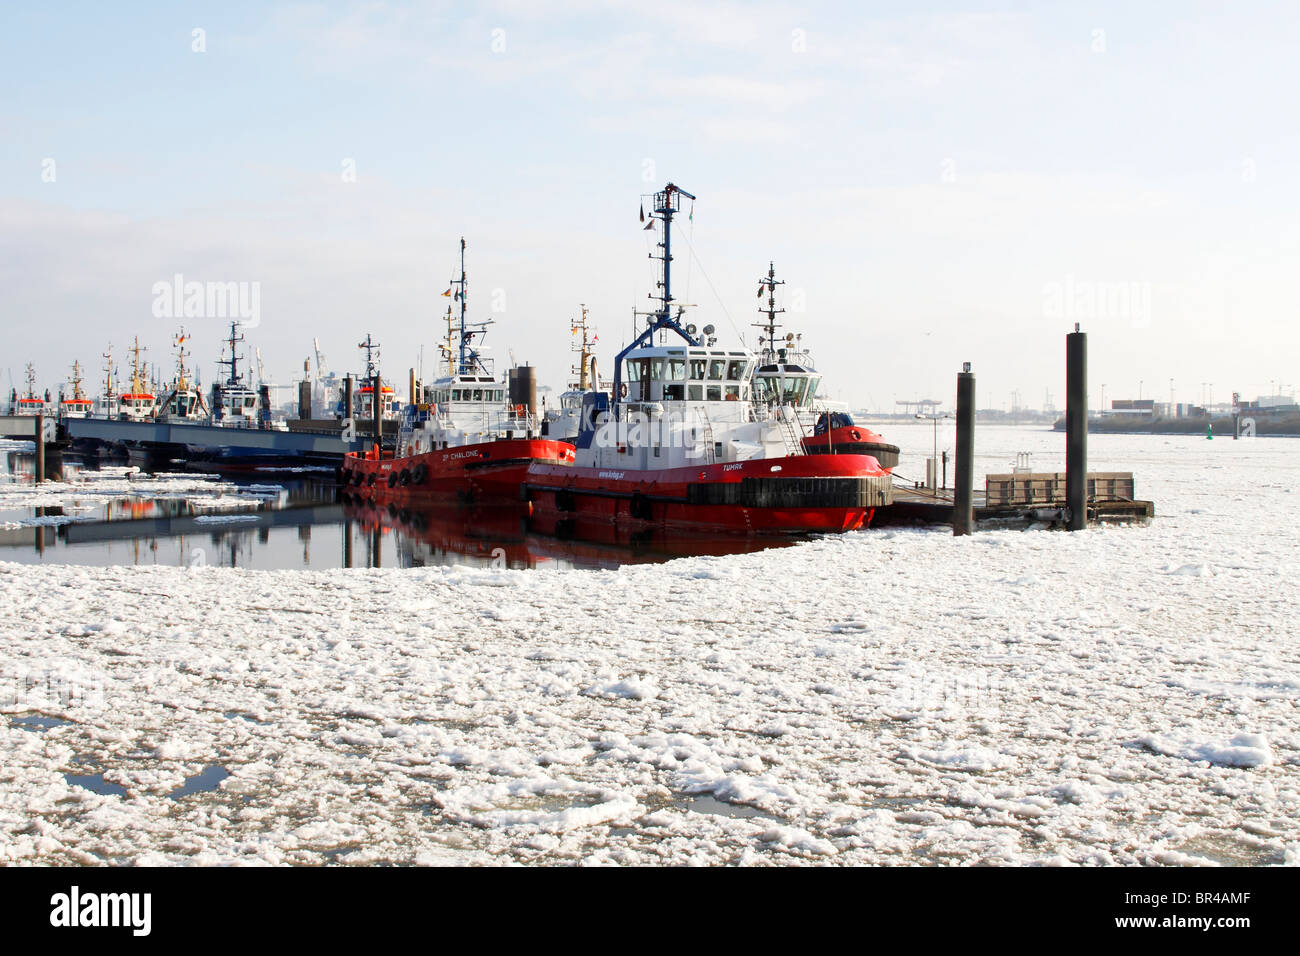 Dans les glaces, les navires remorqueurs dans le port de Hambourg en hiver dans les eaux glacées de l'Elbe, Neumuehlen wharf, Hambourg Banque D'Images